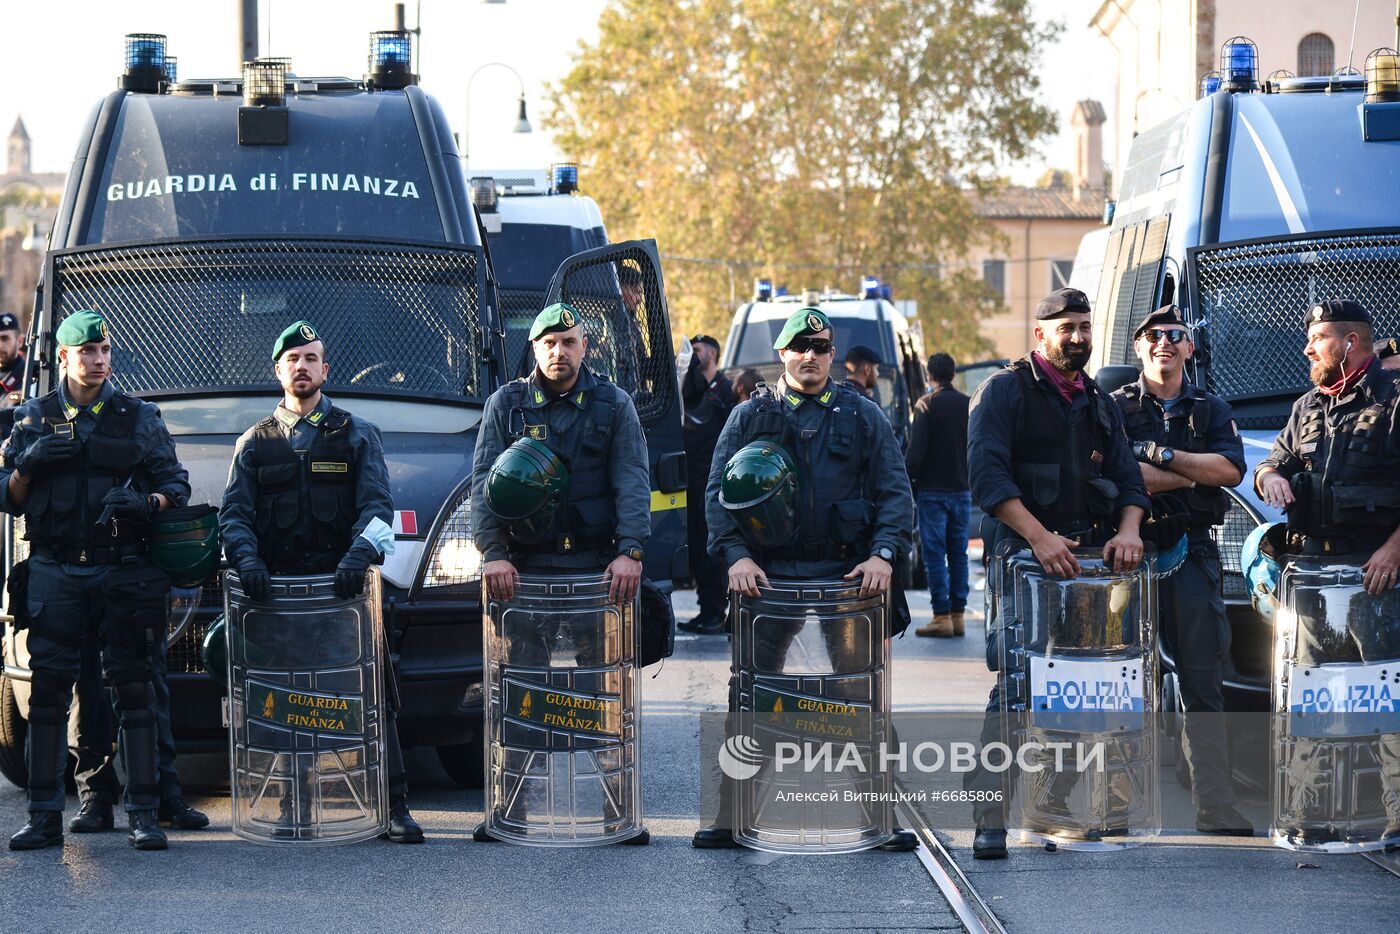 احتجاجات ضد إسرائيل في معرض للمجوهرات بإيطاليا تتحول إلى اشتباكات مع الشرطة